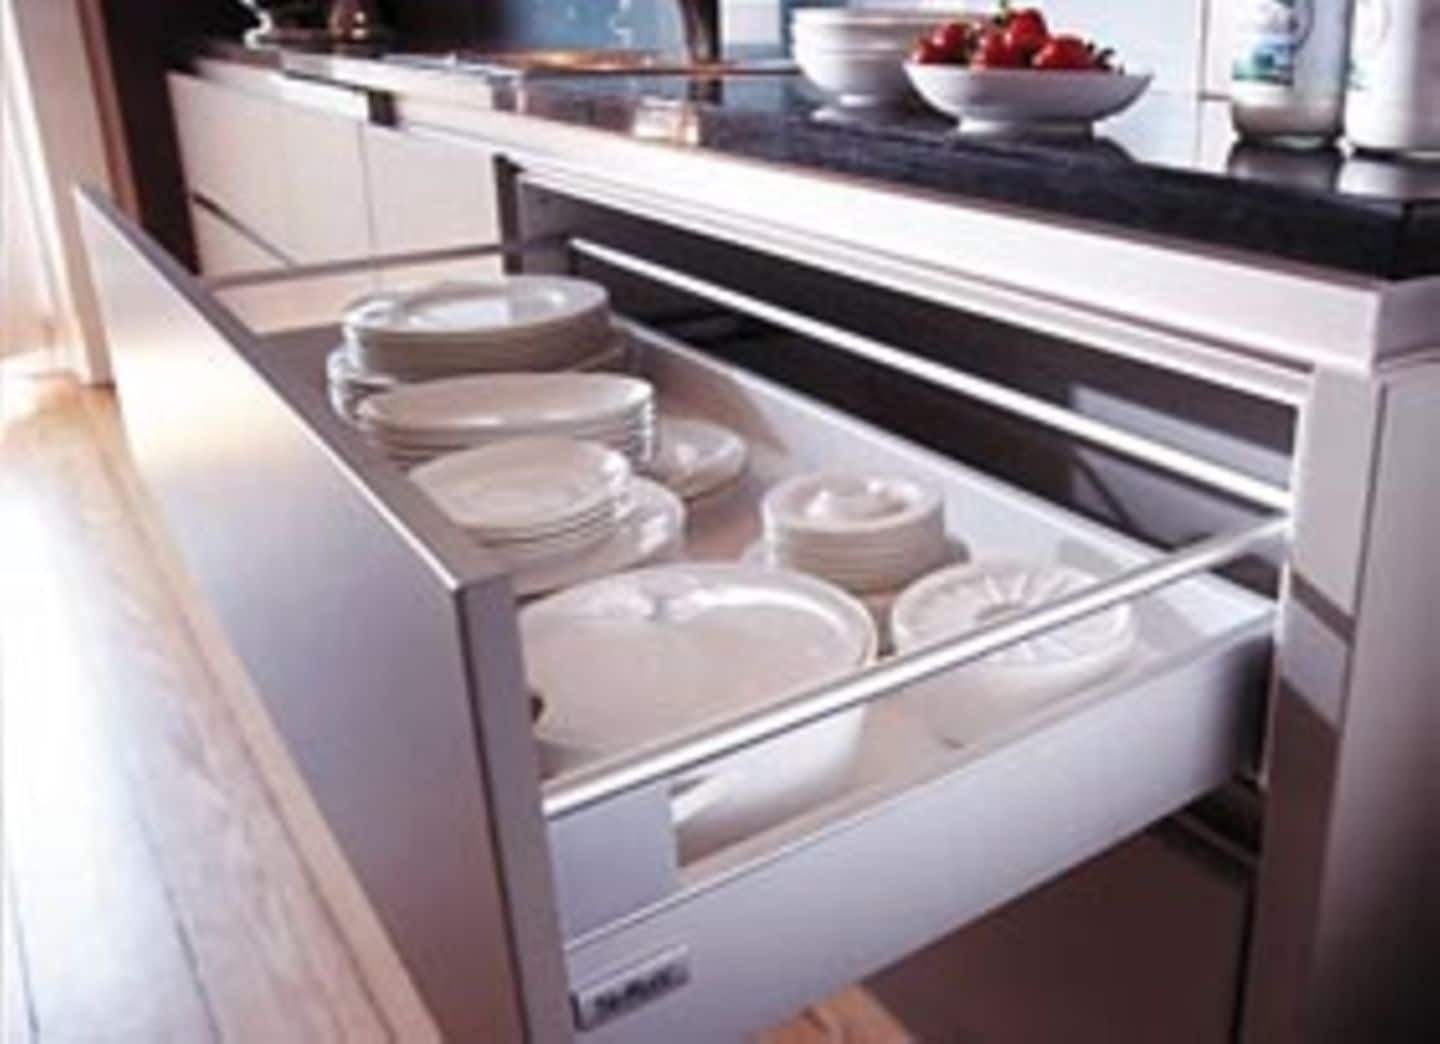 In den großen Schubladen mit Vollauszug findet jede Menge Geschirr einen guten Platz. Gewichtsprobleme gibt es nicht, die Schubladen können problemlos bis zu 120 Kilogramm tragen.